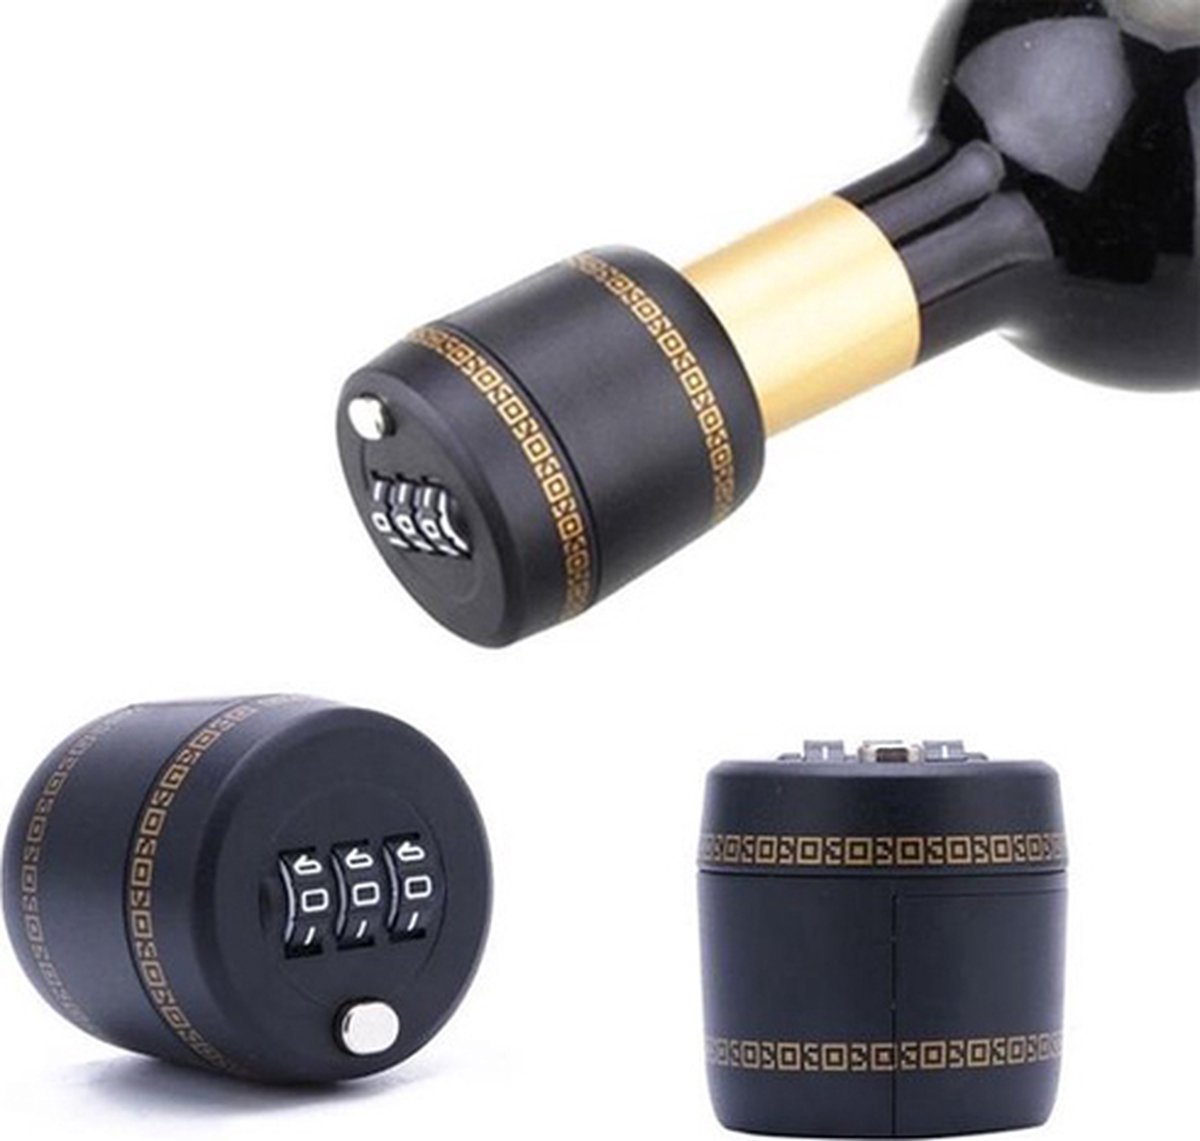 Wijnslot - Flessenslot - Cijferslot - Wijn accessoires - Voor wijnfles - 4,3 cm - Kunststof - Zwart/goud - HordijkProducts